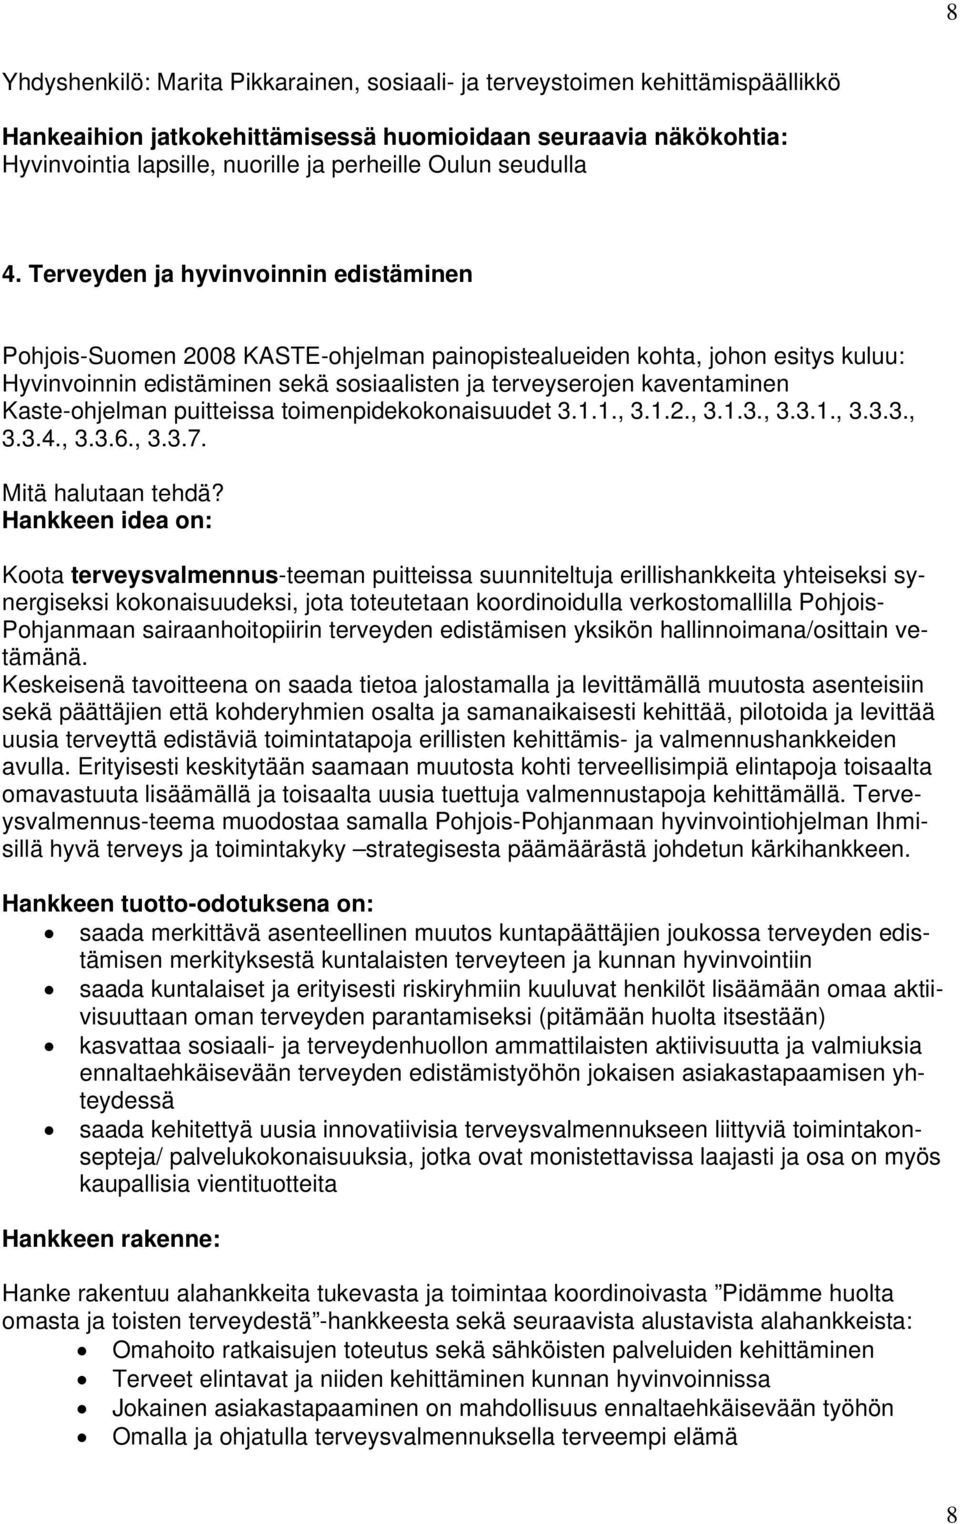 Terveyden ja hyvinvoinnin edistäminen Pohjois-Suomen 2008 KASTE-ohjelman painopistealueiden kohta, johon esitys kuluu: Hyvinvoinnin edistäminen sekä sosiaalisten ja terveyserojen kaventaminen